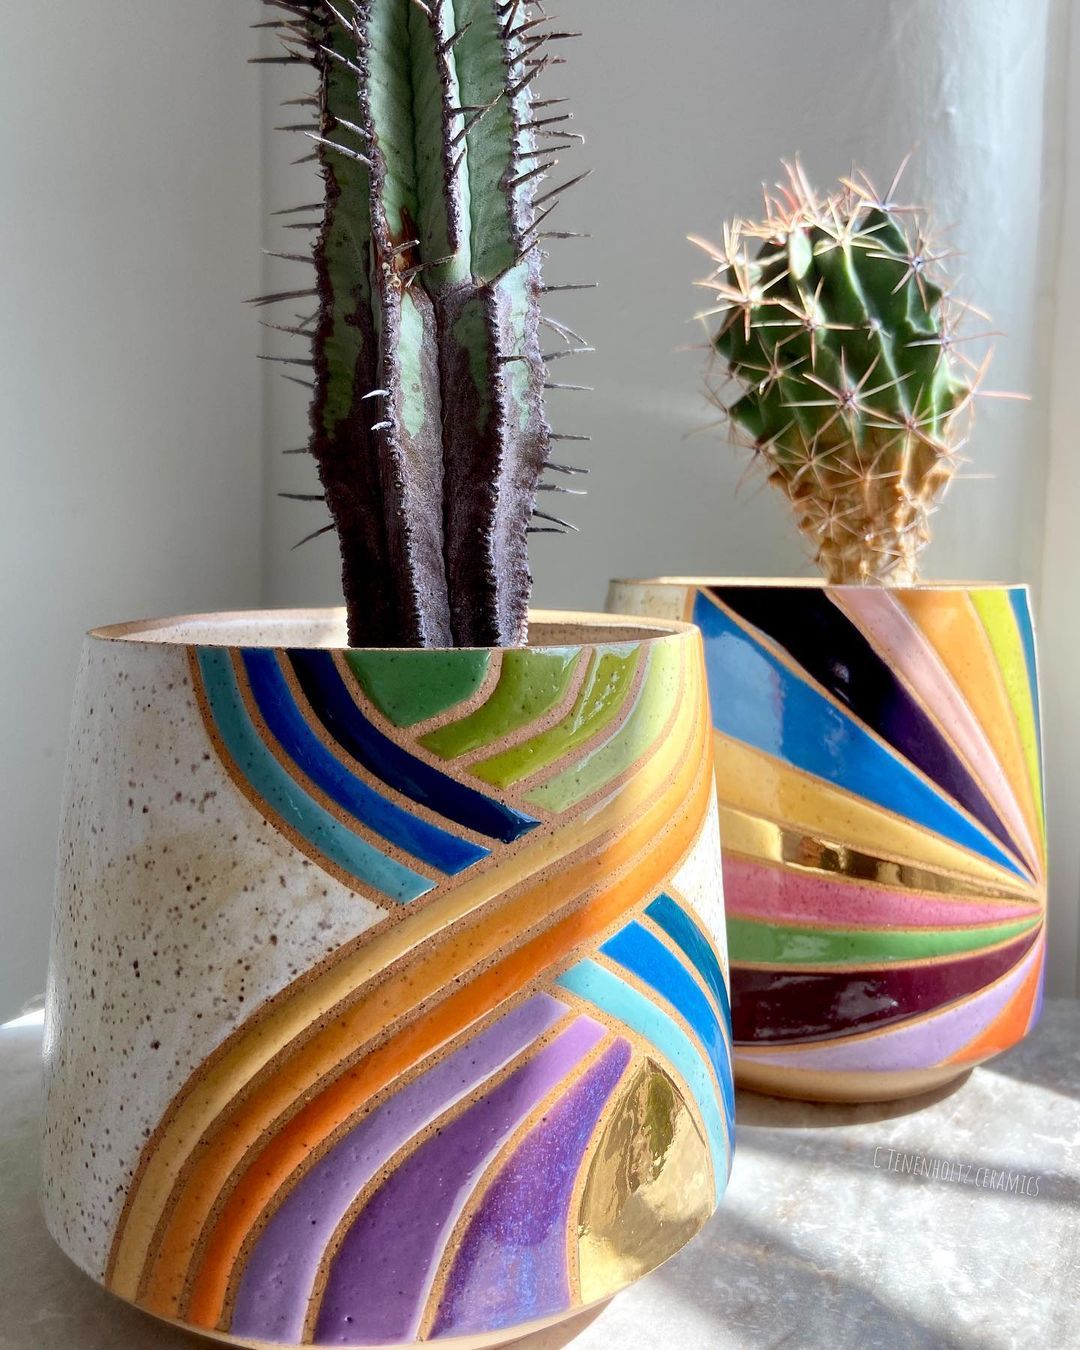 Rainbow Ceramics Gorgeous Multicolored Ceramic Pieces By Christine Tenenholtz (10)